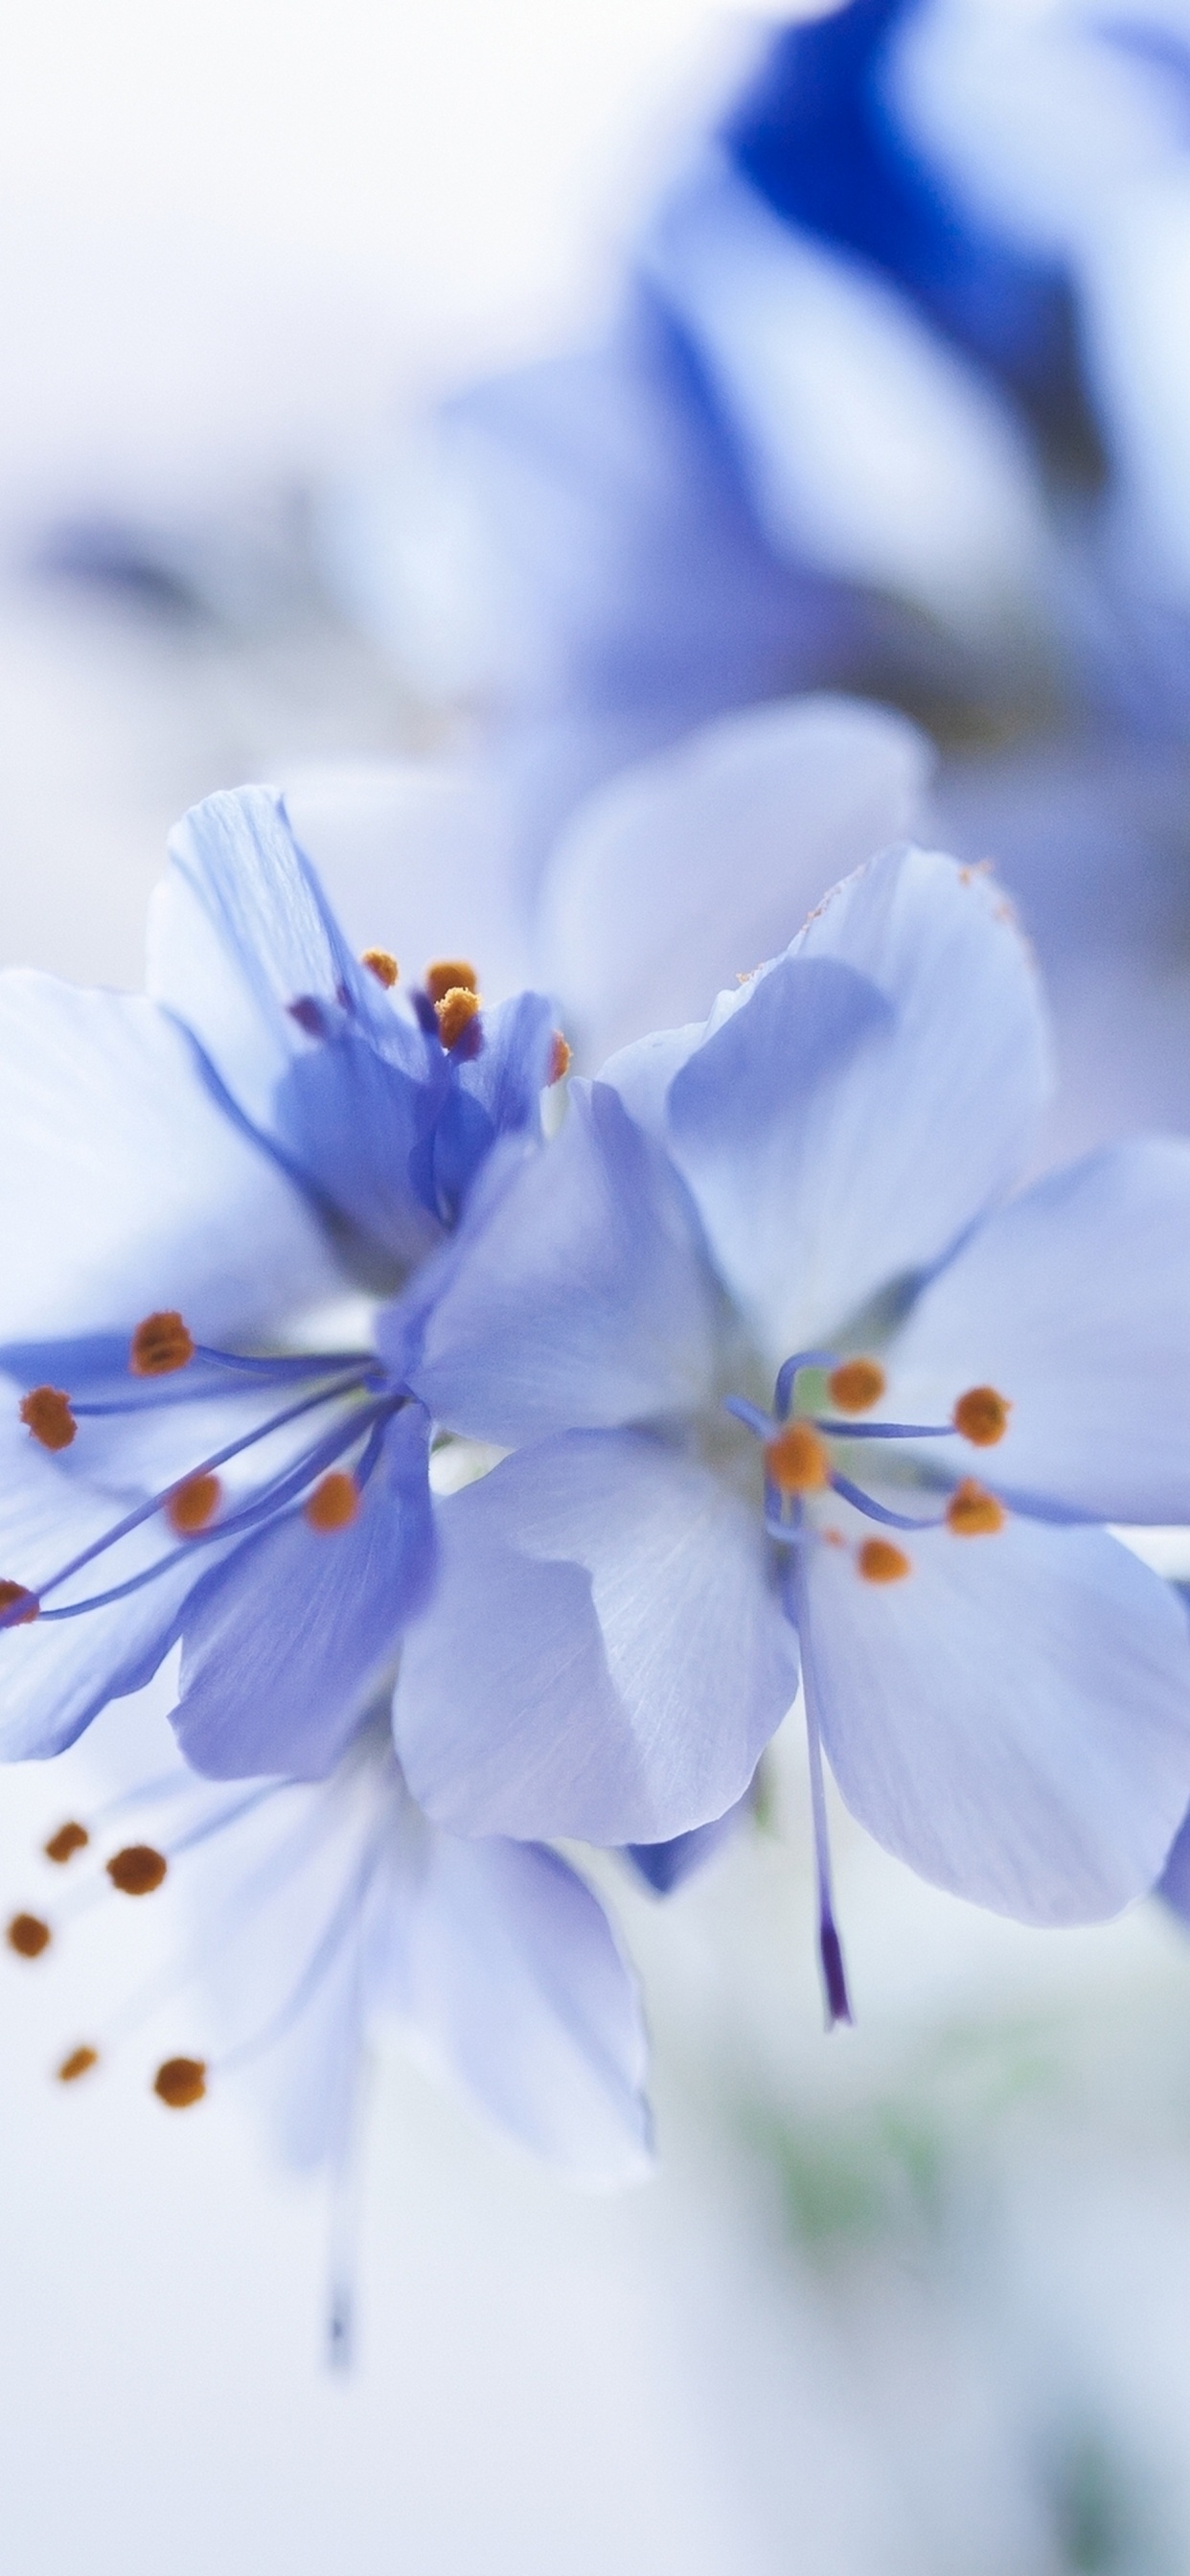 White and Blue Flowers in Tilt Shift Lens. Wallpaper in 1242x2688 Resolution